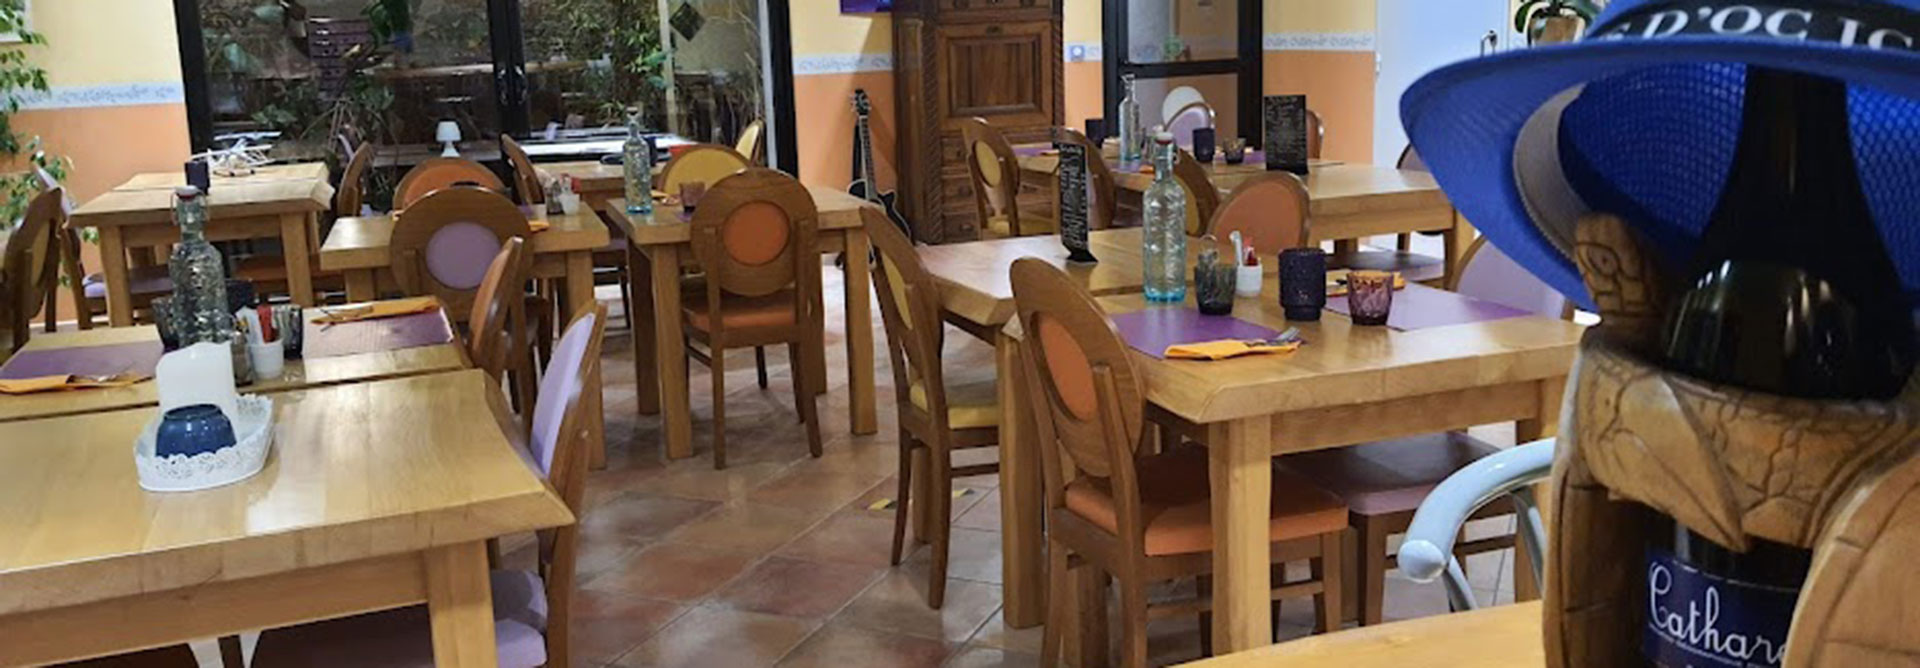 De zaal van het restaurant Galley op camping Escale Occitane in de Aude